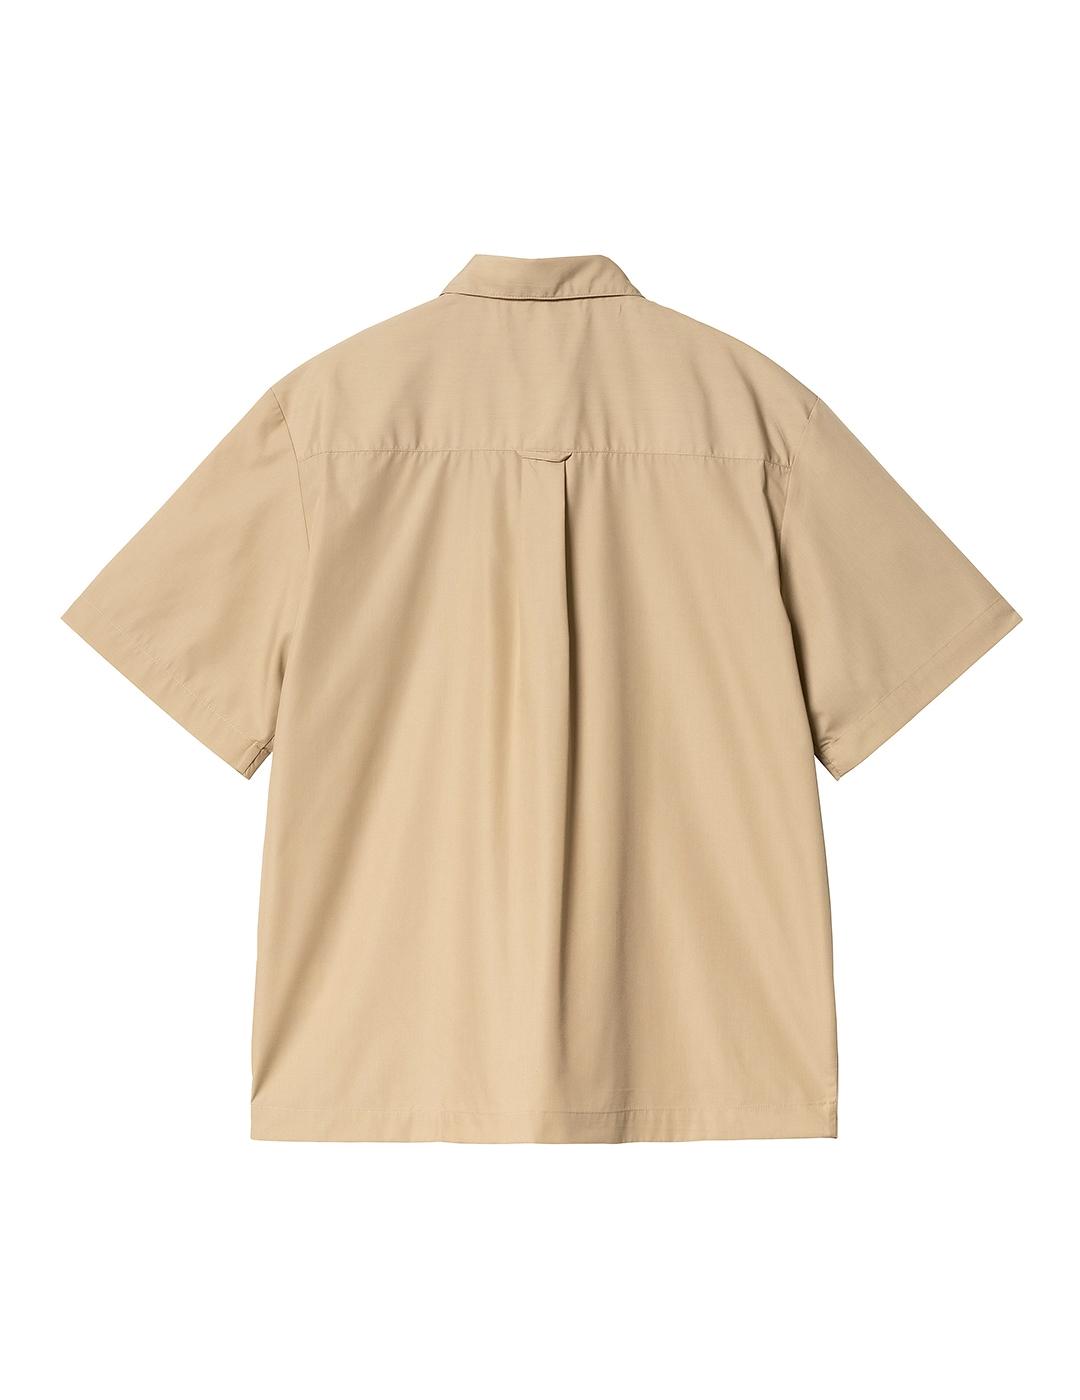 Camisa Carhartt Wip Craft beige de hombre